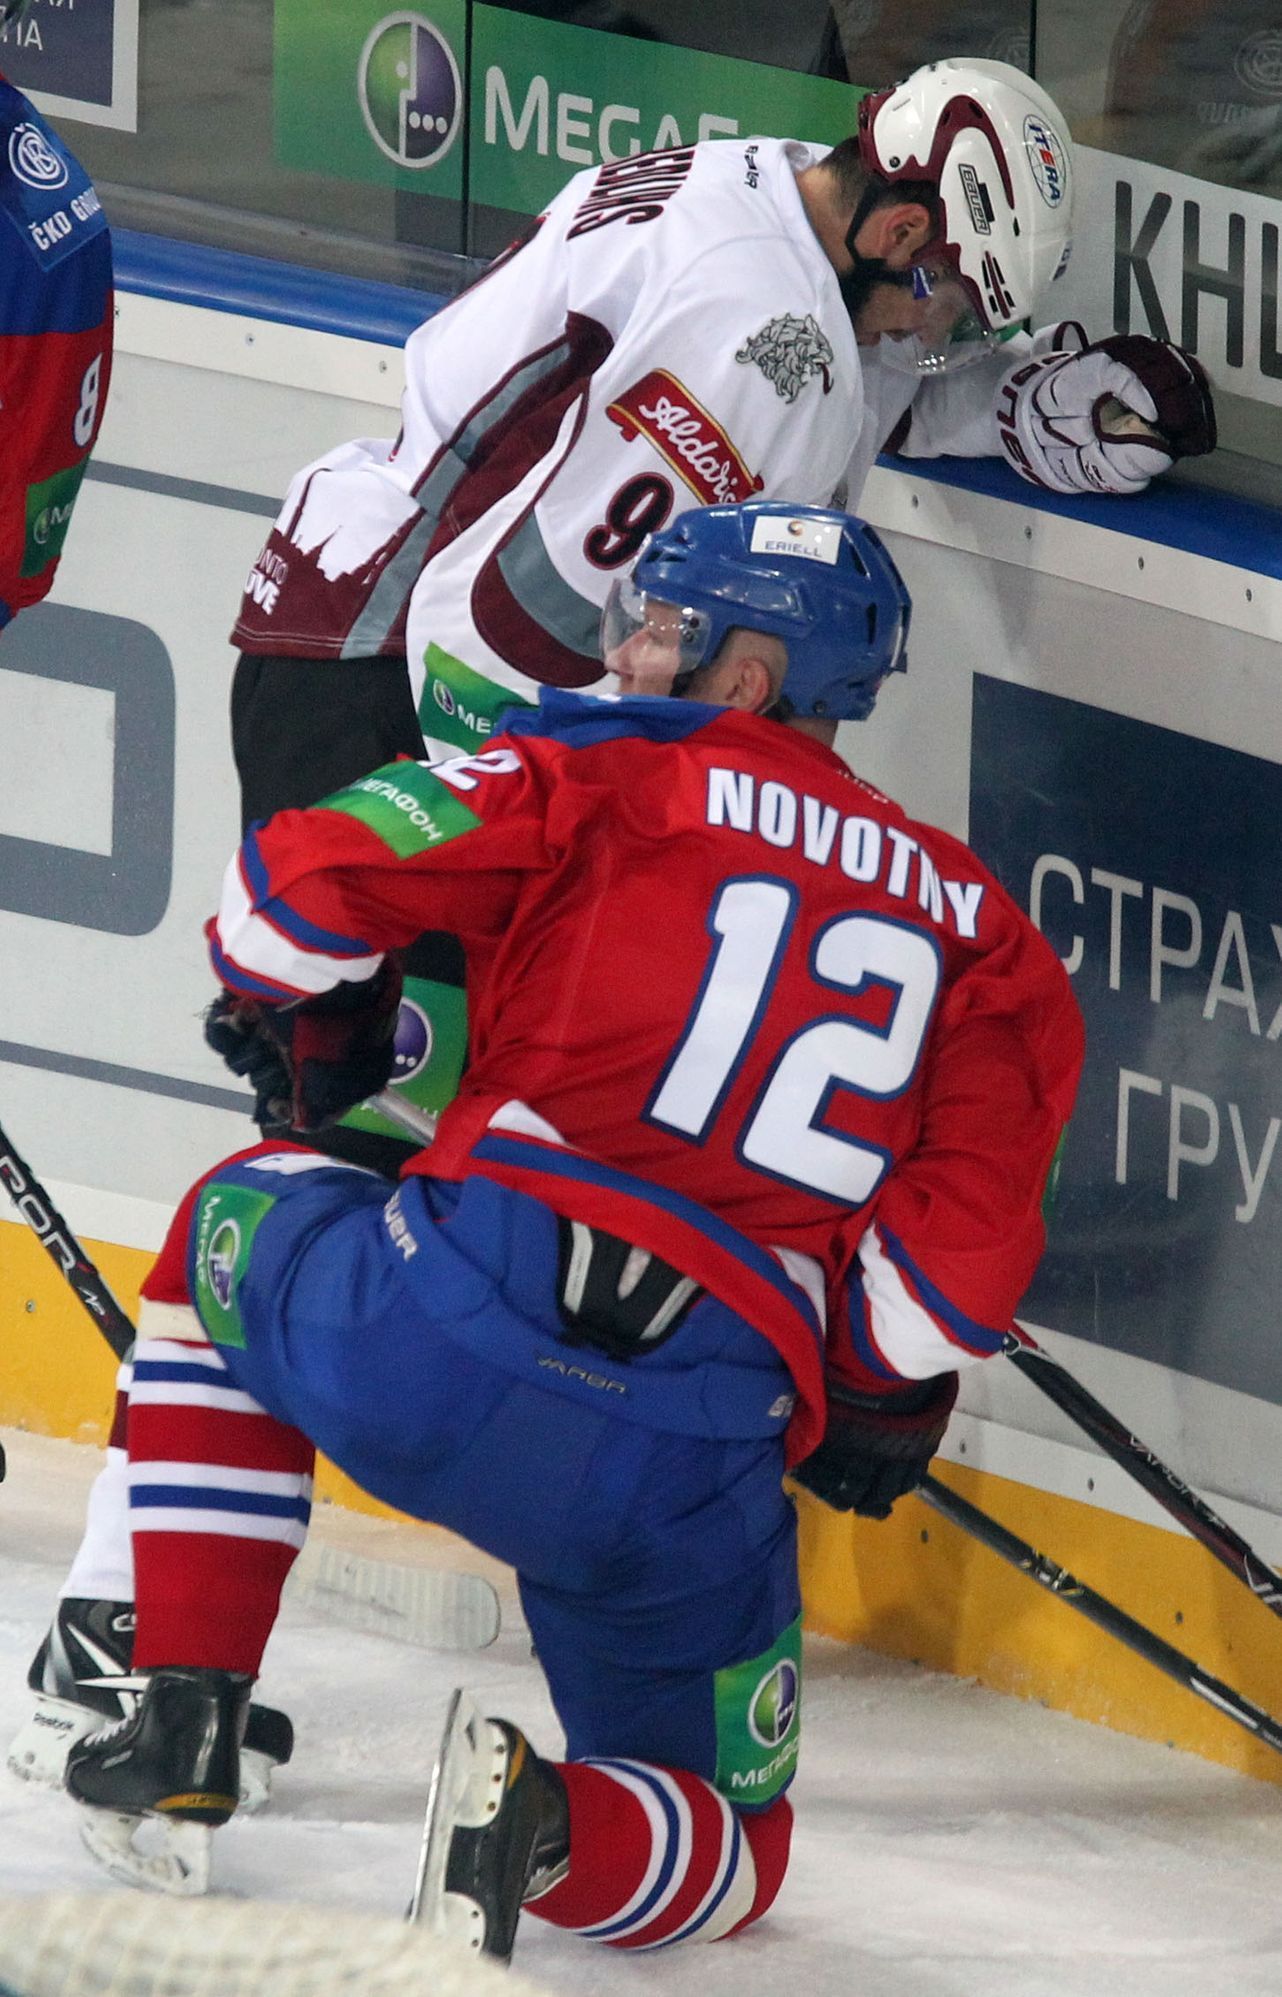 Hokejista Krisjanis Redlihs (vzadu) brání puk před Jiřím Novotným v utkání KHL 2012/13 mezi Lvem Praha s Dinamem Riga .